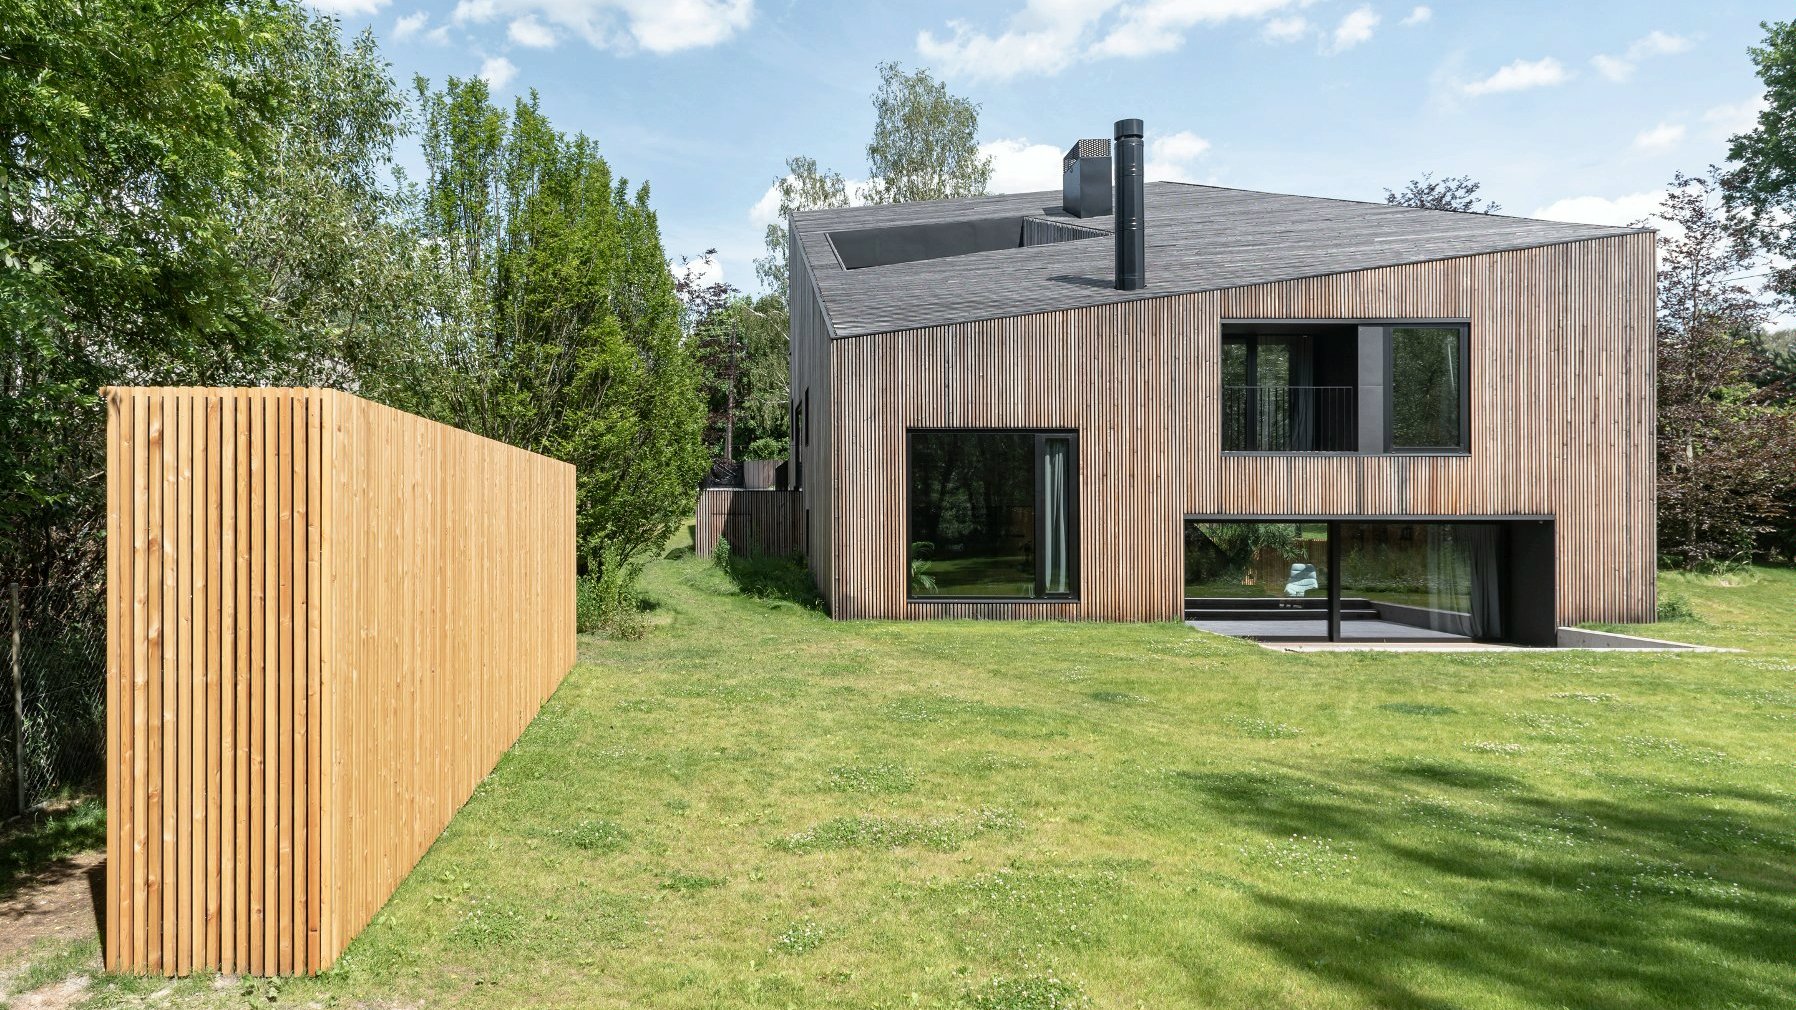 Zdjęcie przedstawia "Złamany Dom" - jego elewację tworzą drewniane deski. Przed budynkiem widać ogród z równo skoszoną trawą.